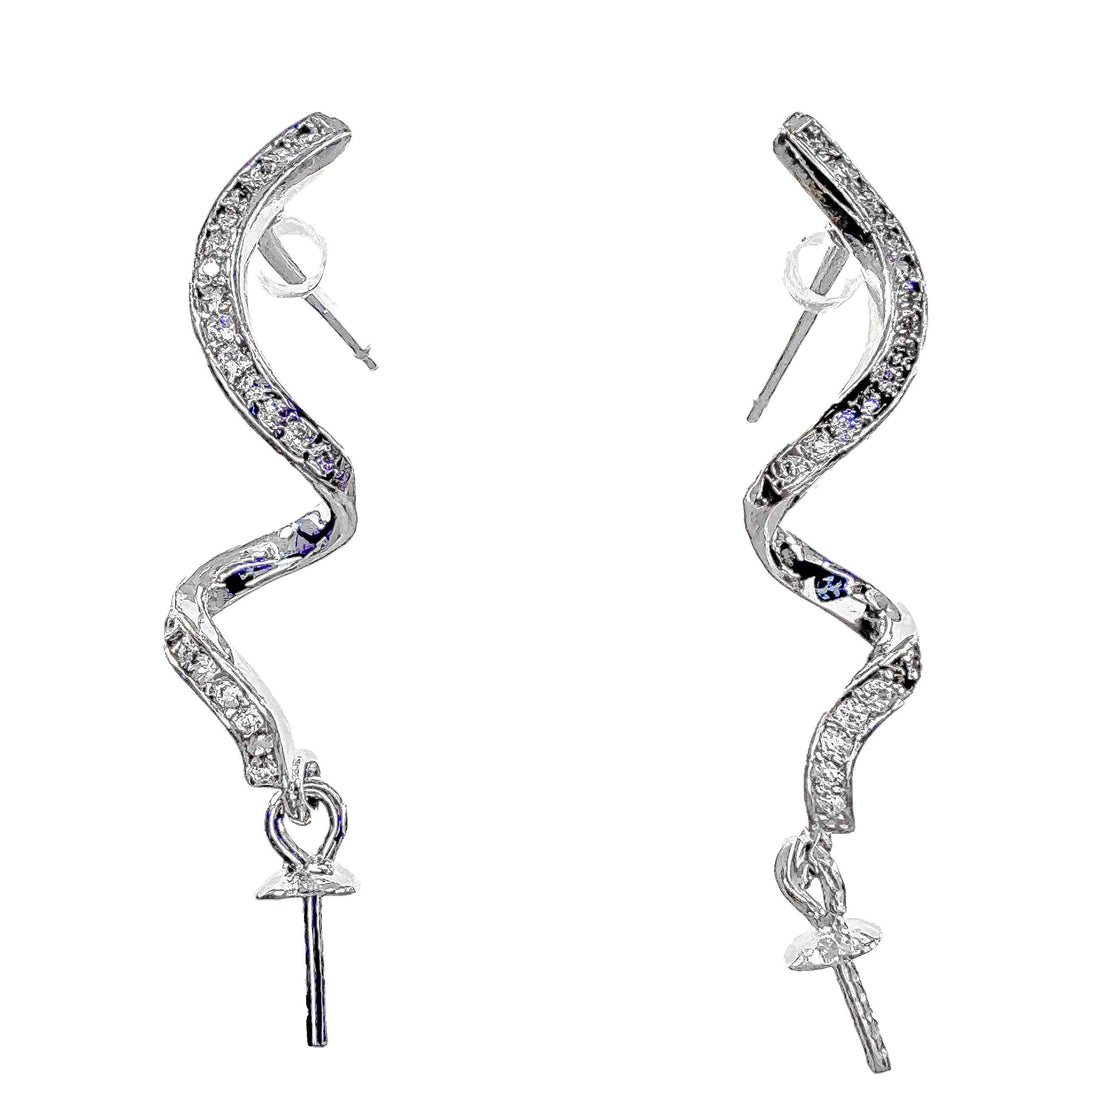 DIY Mount Earrings - 925 Sterling Silver Double Swirl Rhinestone Dangle